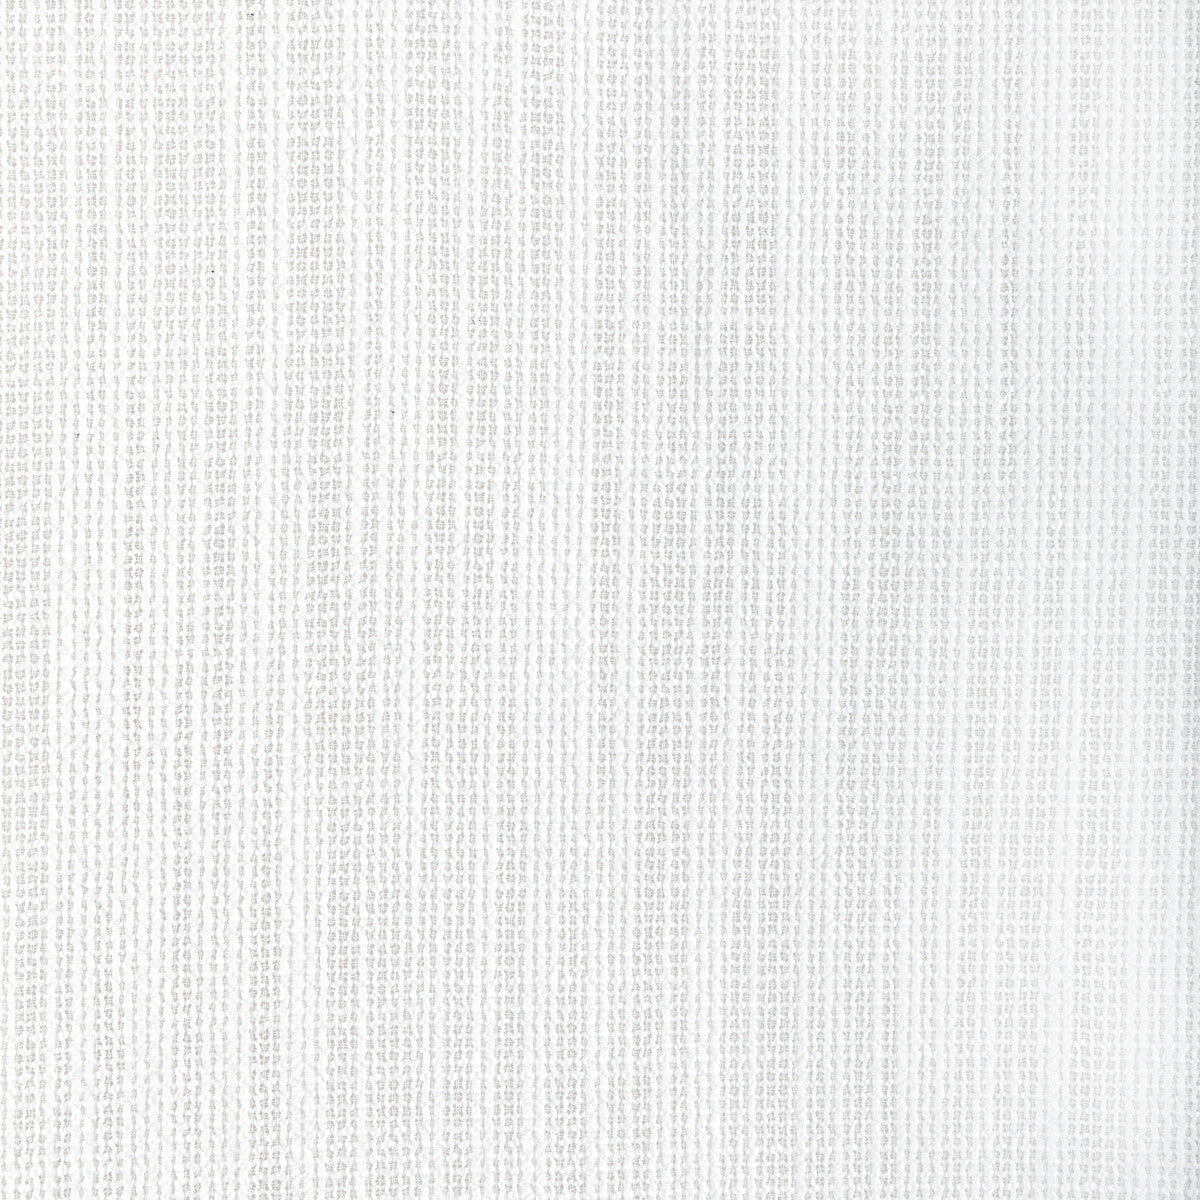 Kravet Design fabric in 4940-101 color - pattern 4940.101.0 - by Kravet Basics